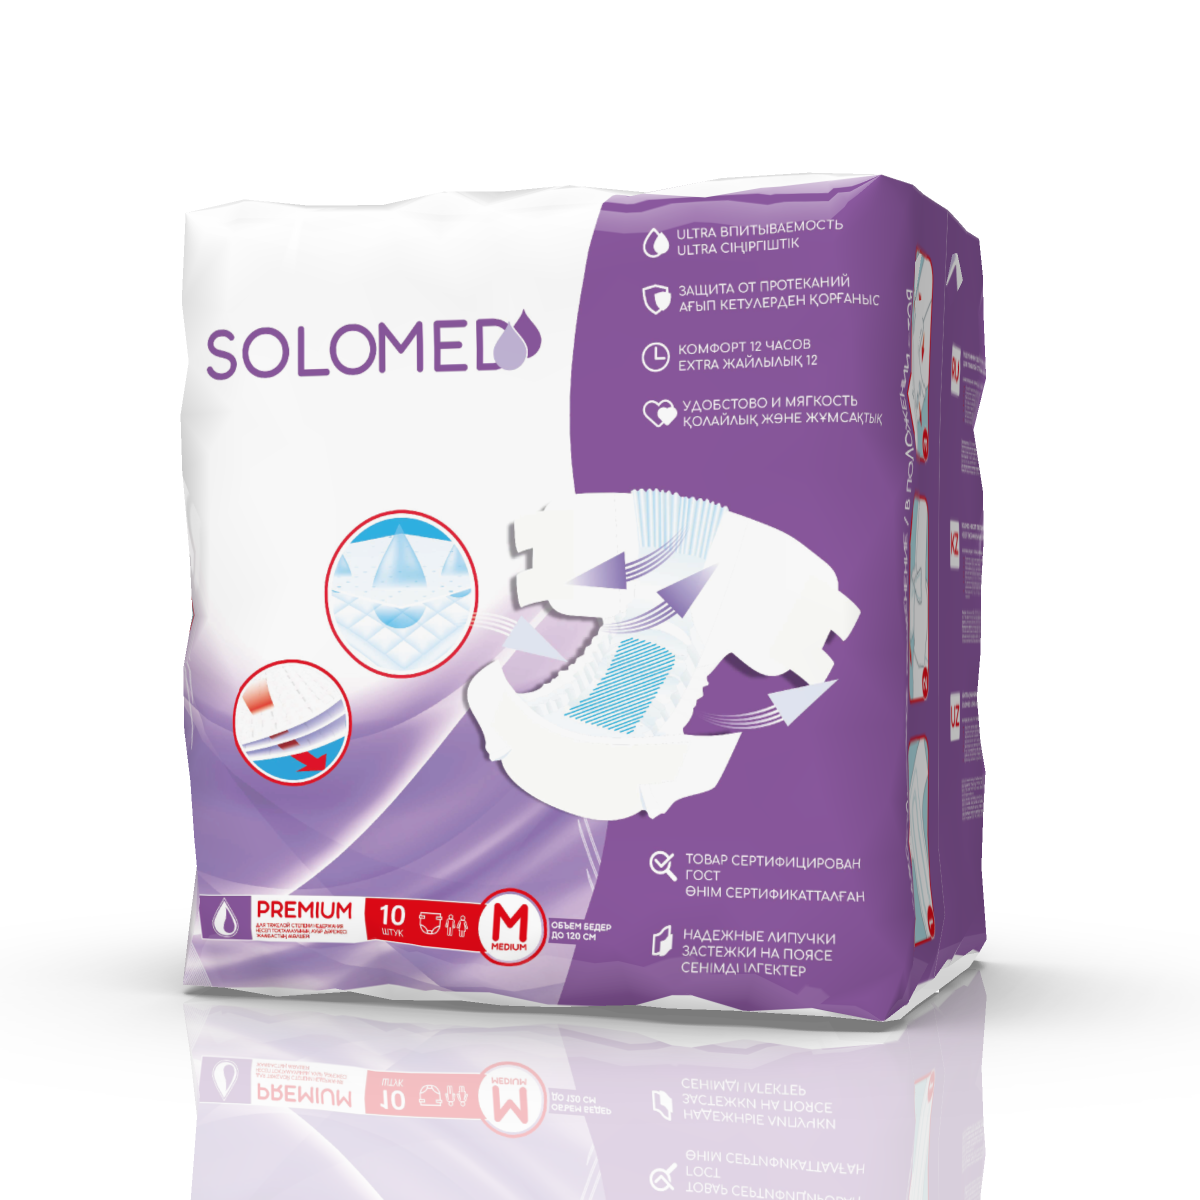 Solomed Premium, подгузники для взрослых (размер M), 10 шт. ответы нашим крикам